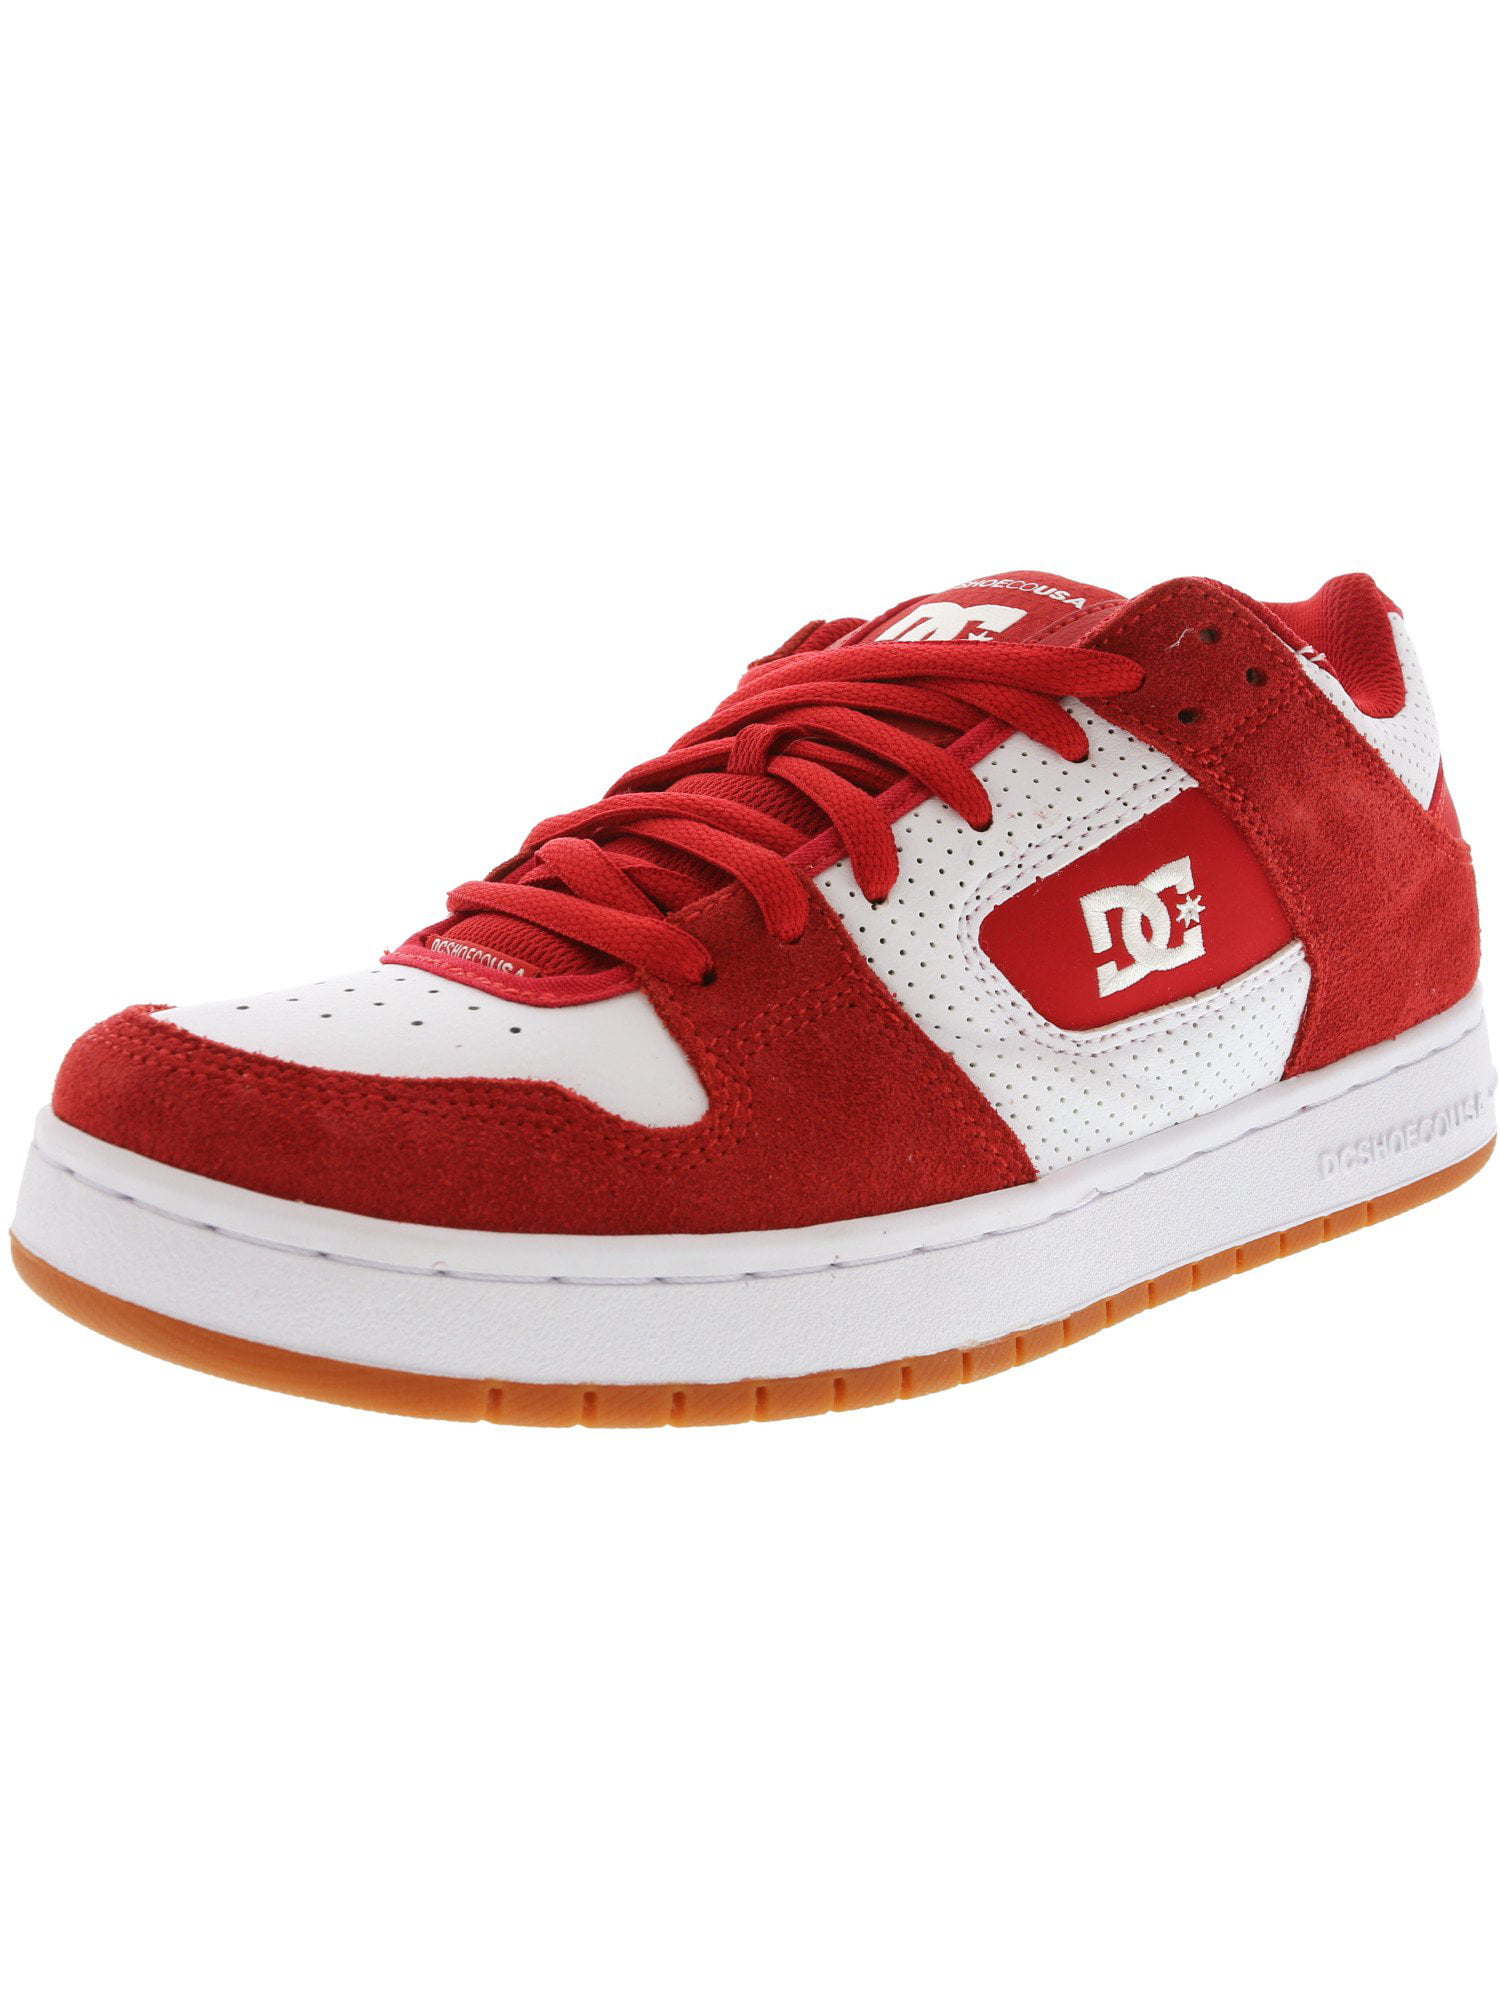 dc shoes manteca red